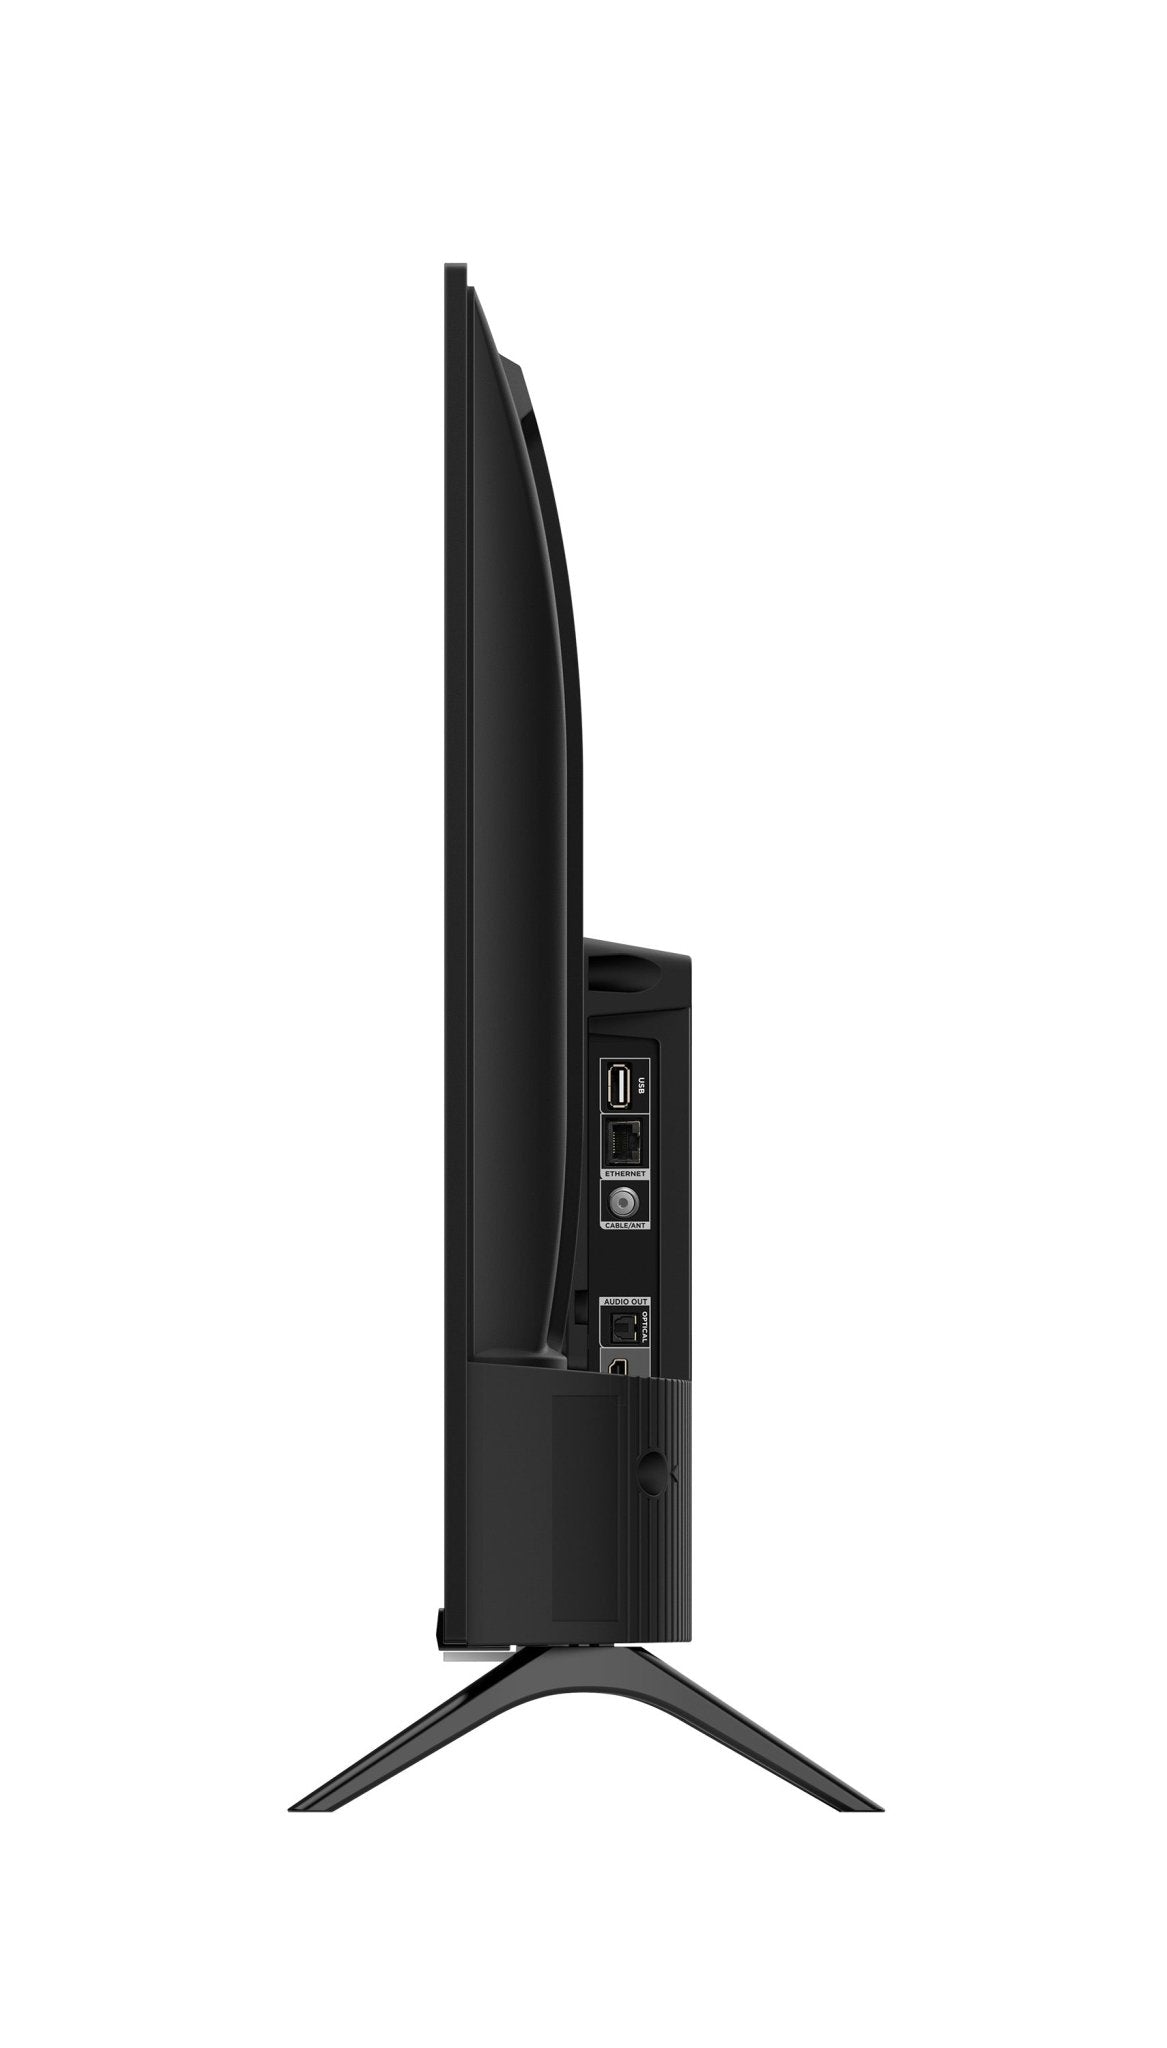 TCL S5400 全高清 Google 電視 - Fever Electrics 電器熱網購平台